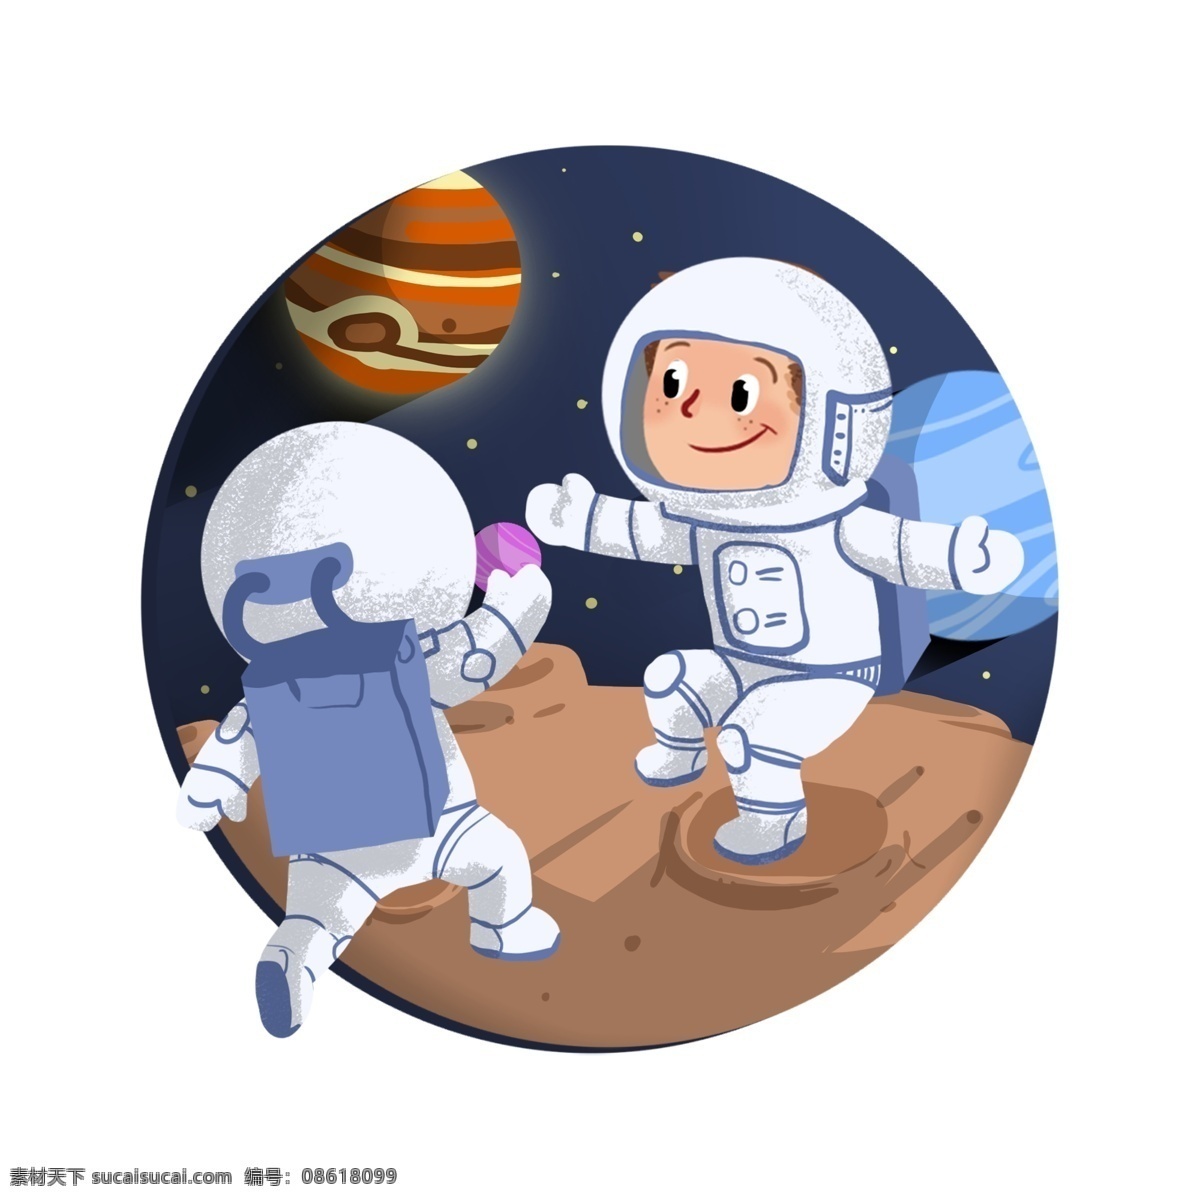 太空 中宇 航员 相互 打招呼 挥手 太空人 宇宙 宇航员 可爱 面抠图 装饰画 插画 简约风格 手绘 手绘原图